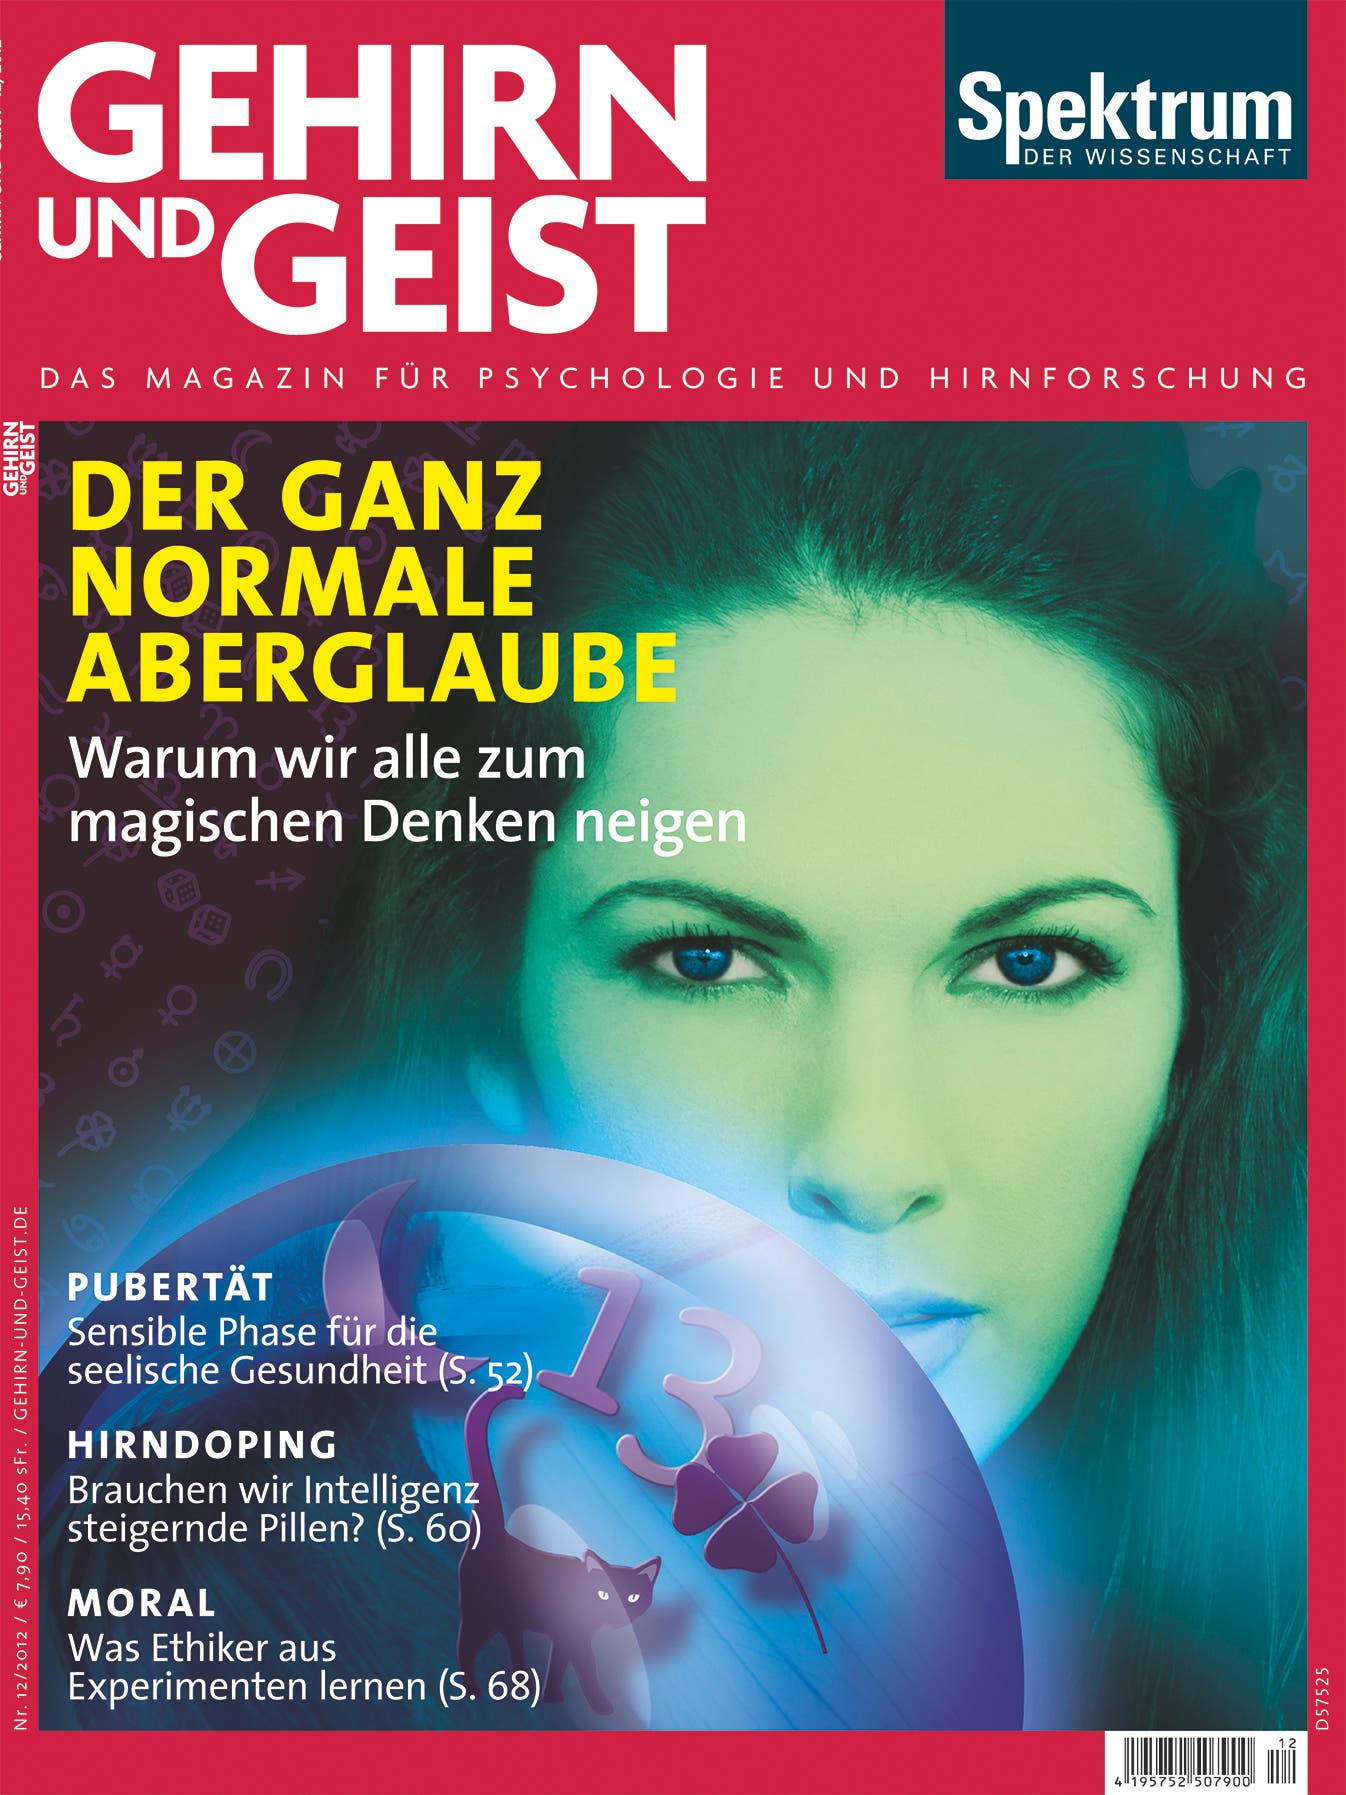 Aus Gehirn und Geist 12/2012 <br><a href="https://www.spektrum.de/artikel/1064048" target="_blank">Kostenloses Probeheft</a>